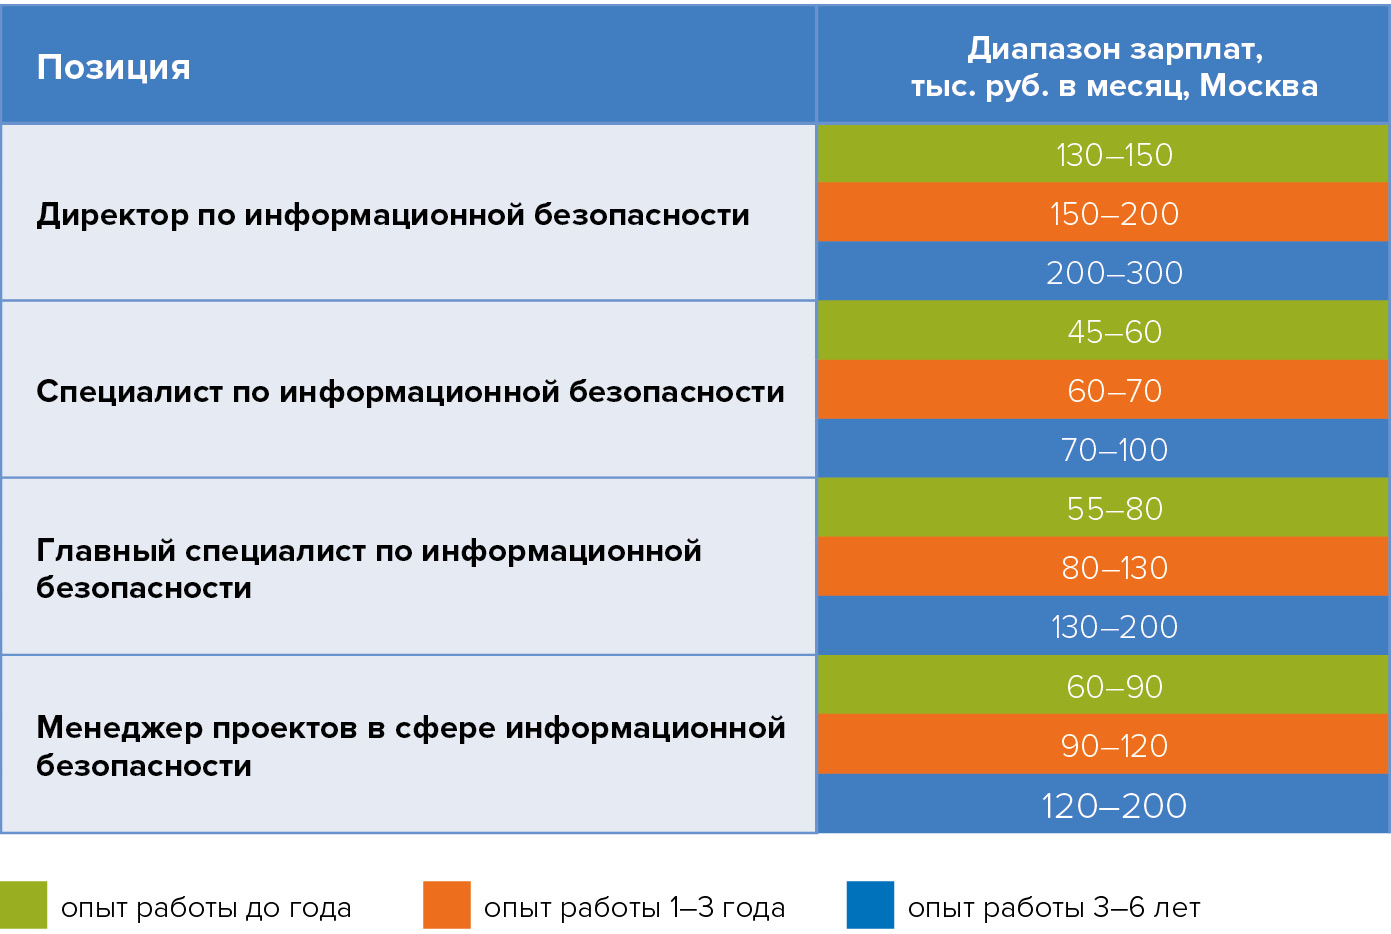 Диапазон предлагаемых зарплат для различных специалистов в области информационной безопастности ЦОДов по Москве